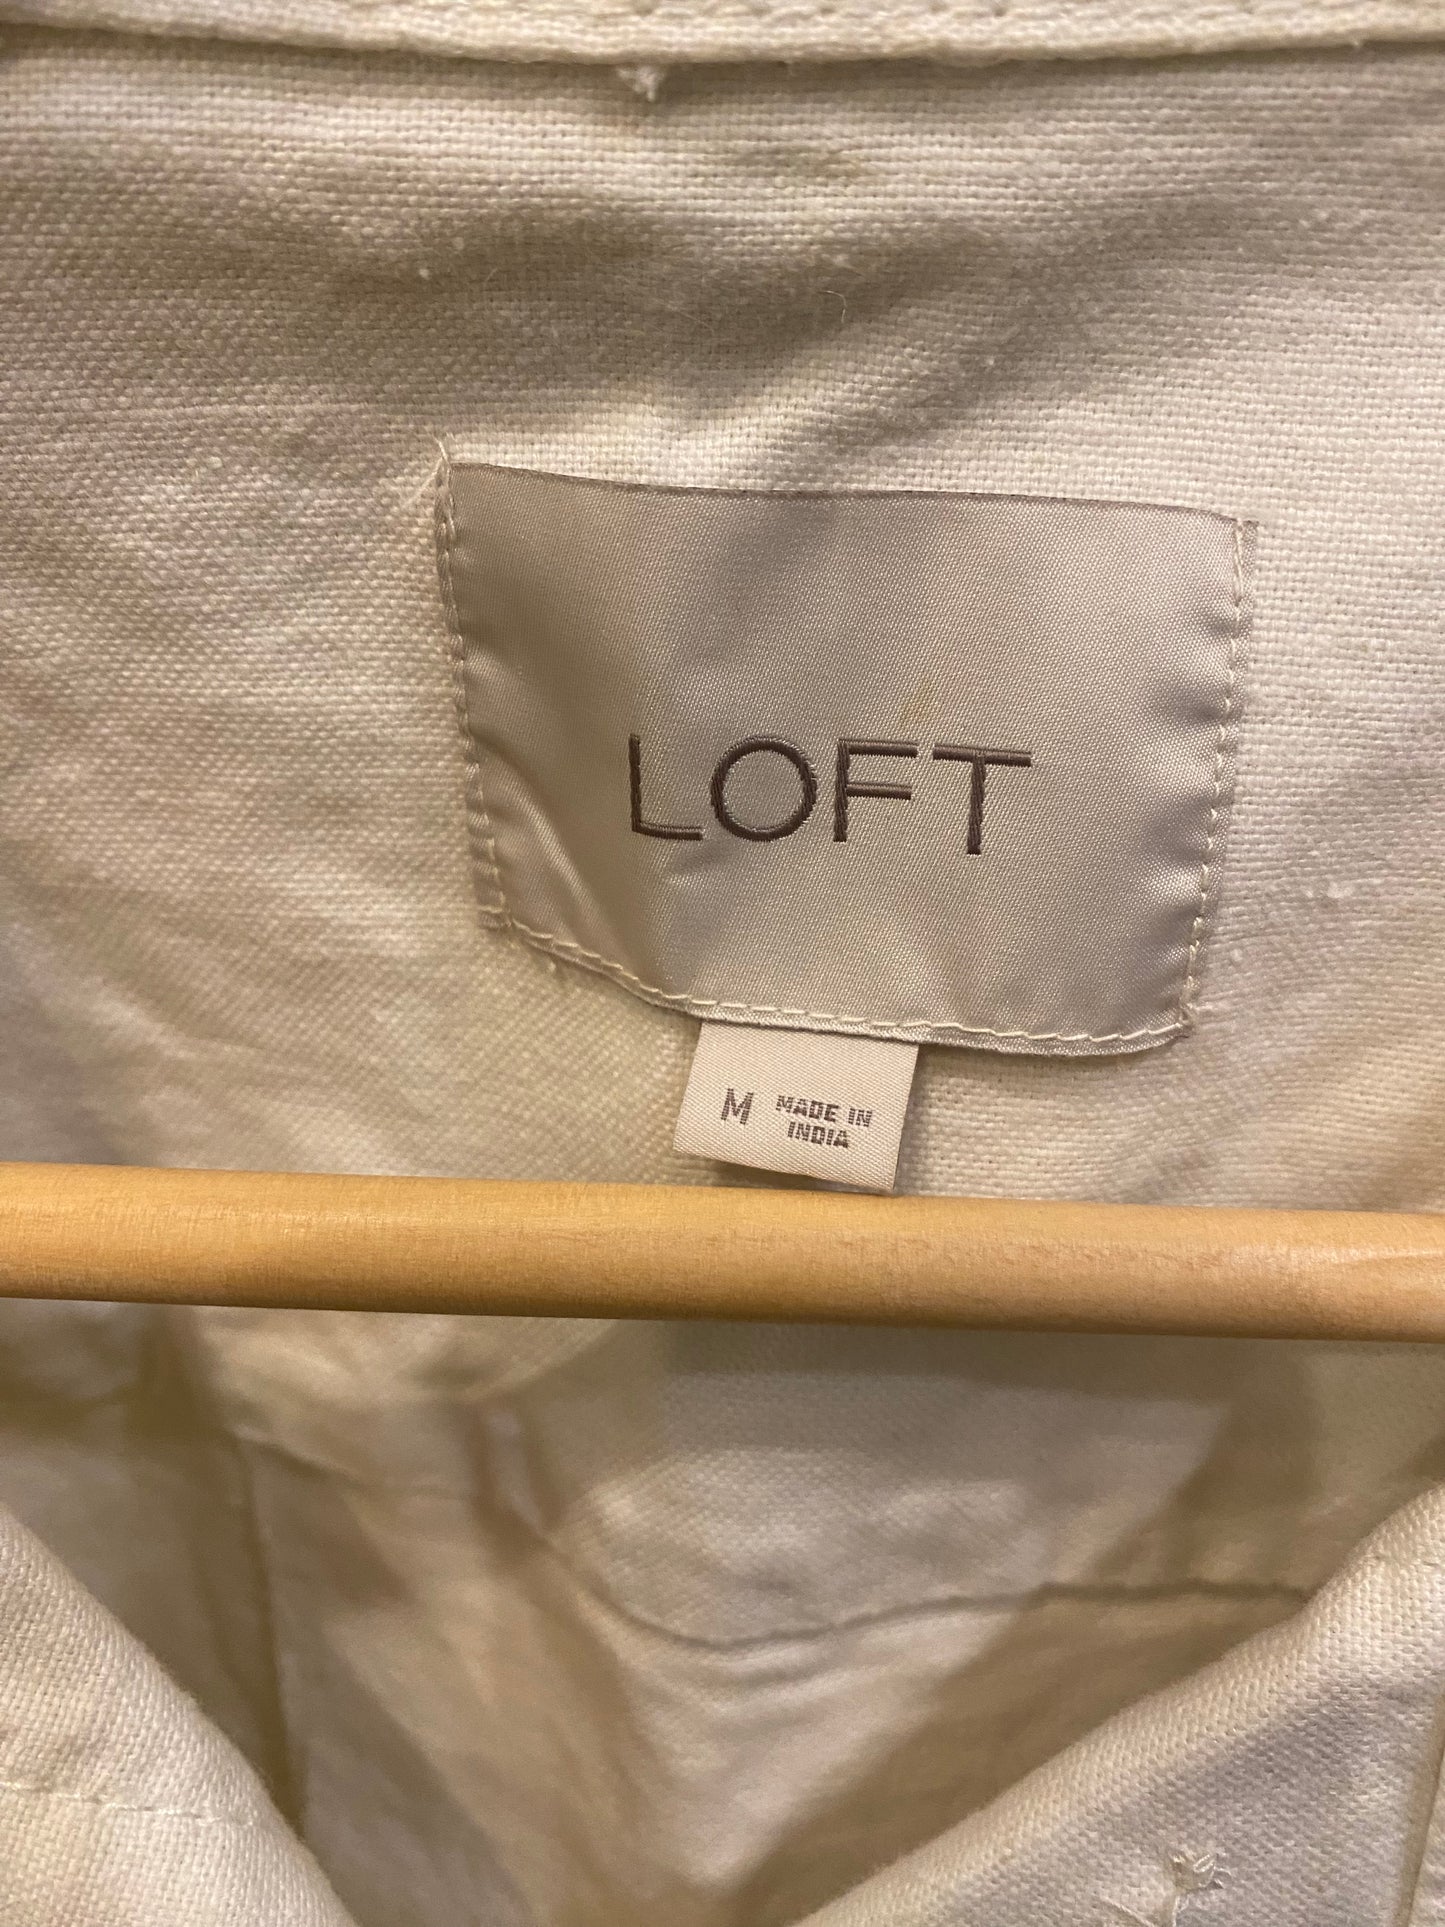 Consignment 4903-13 Loft cream jacket sz M linen/cotton